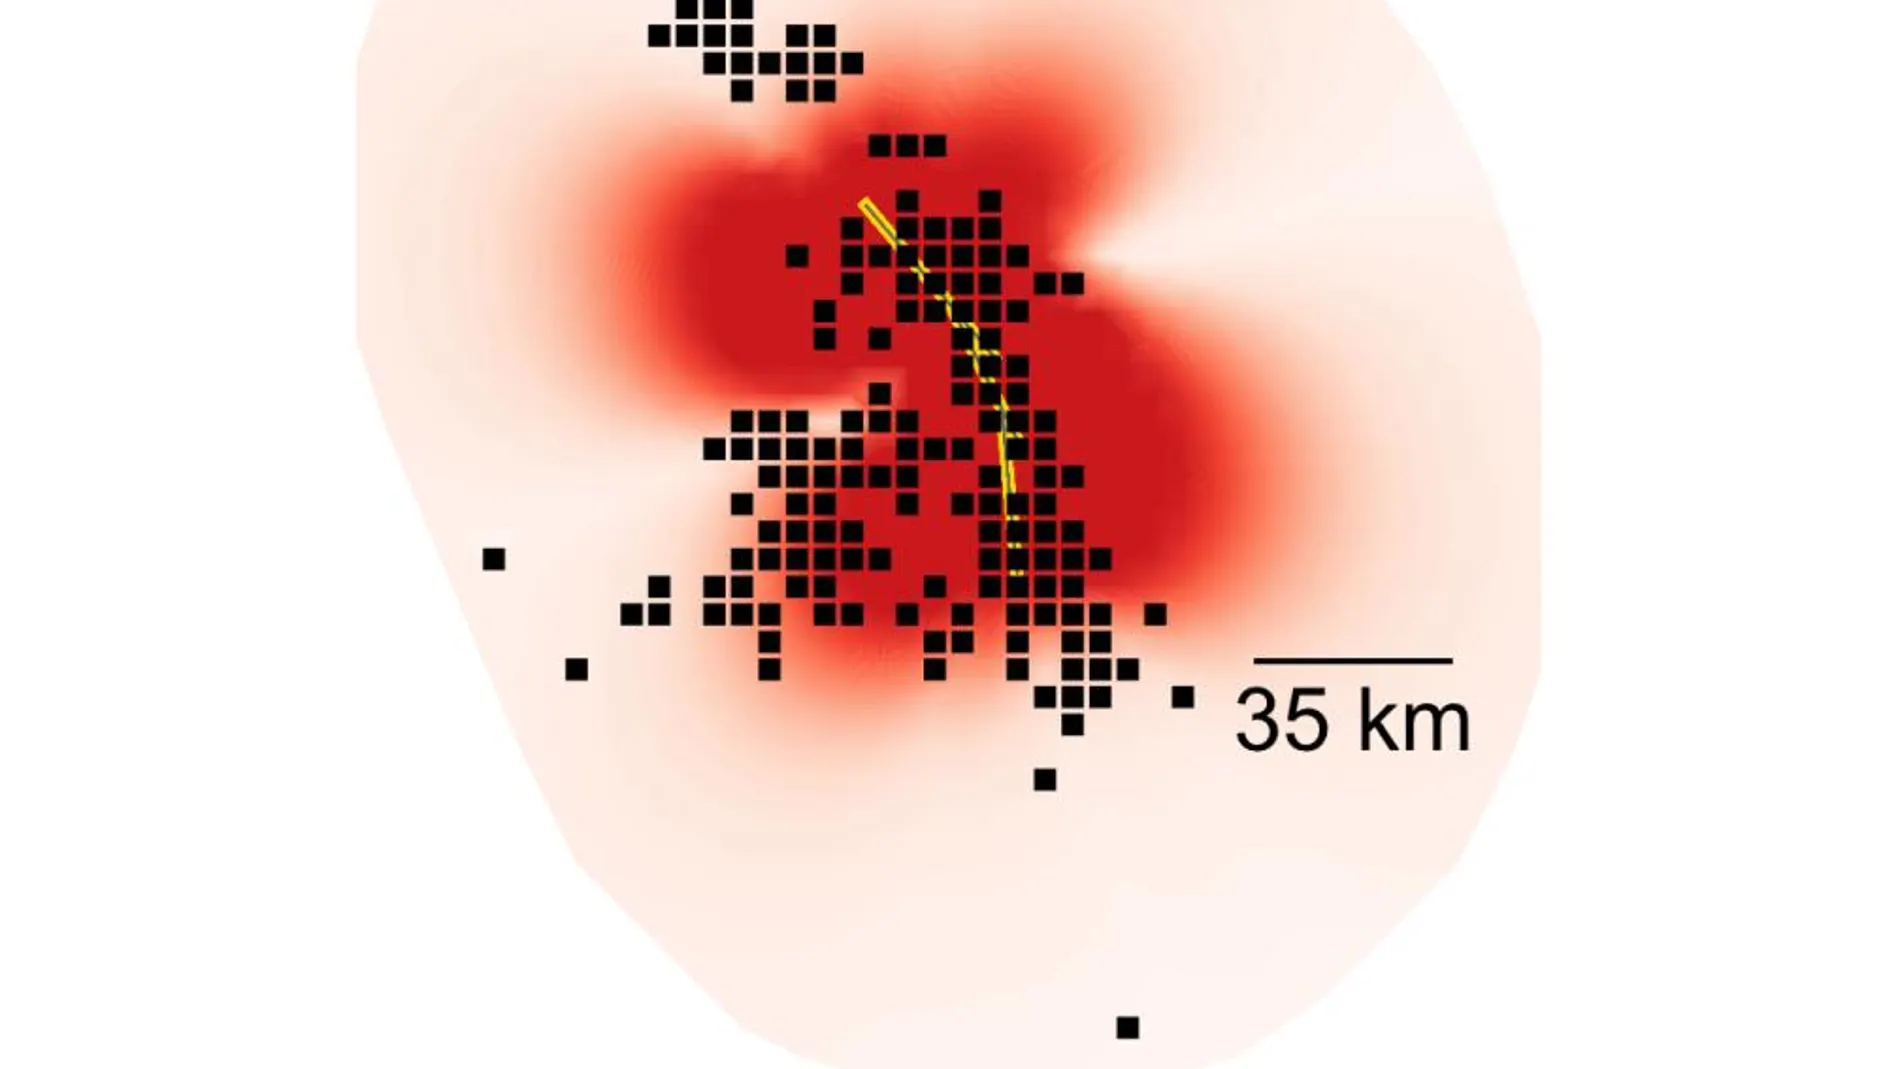 La imagen muestra un mapa de la distribución de probabilidades de réplica del terremoto de Landers. Las zonas en rojo oscuro son regiones más propensas a sentir réplicas según las predicciones. Los puntos negros representan réplicas observadas y la línea amarilla muestra las fallas que se rompieron durante el temblor principal